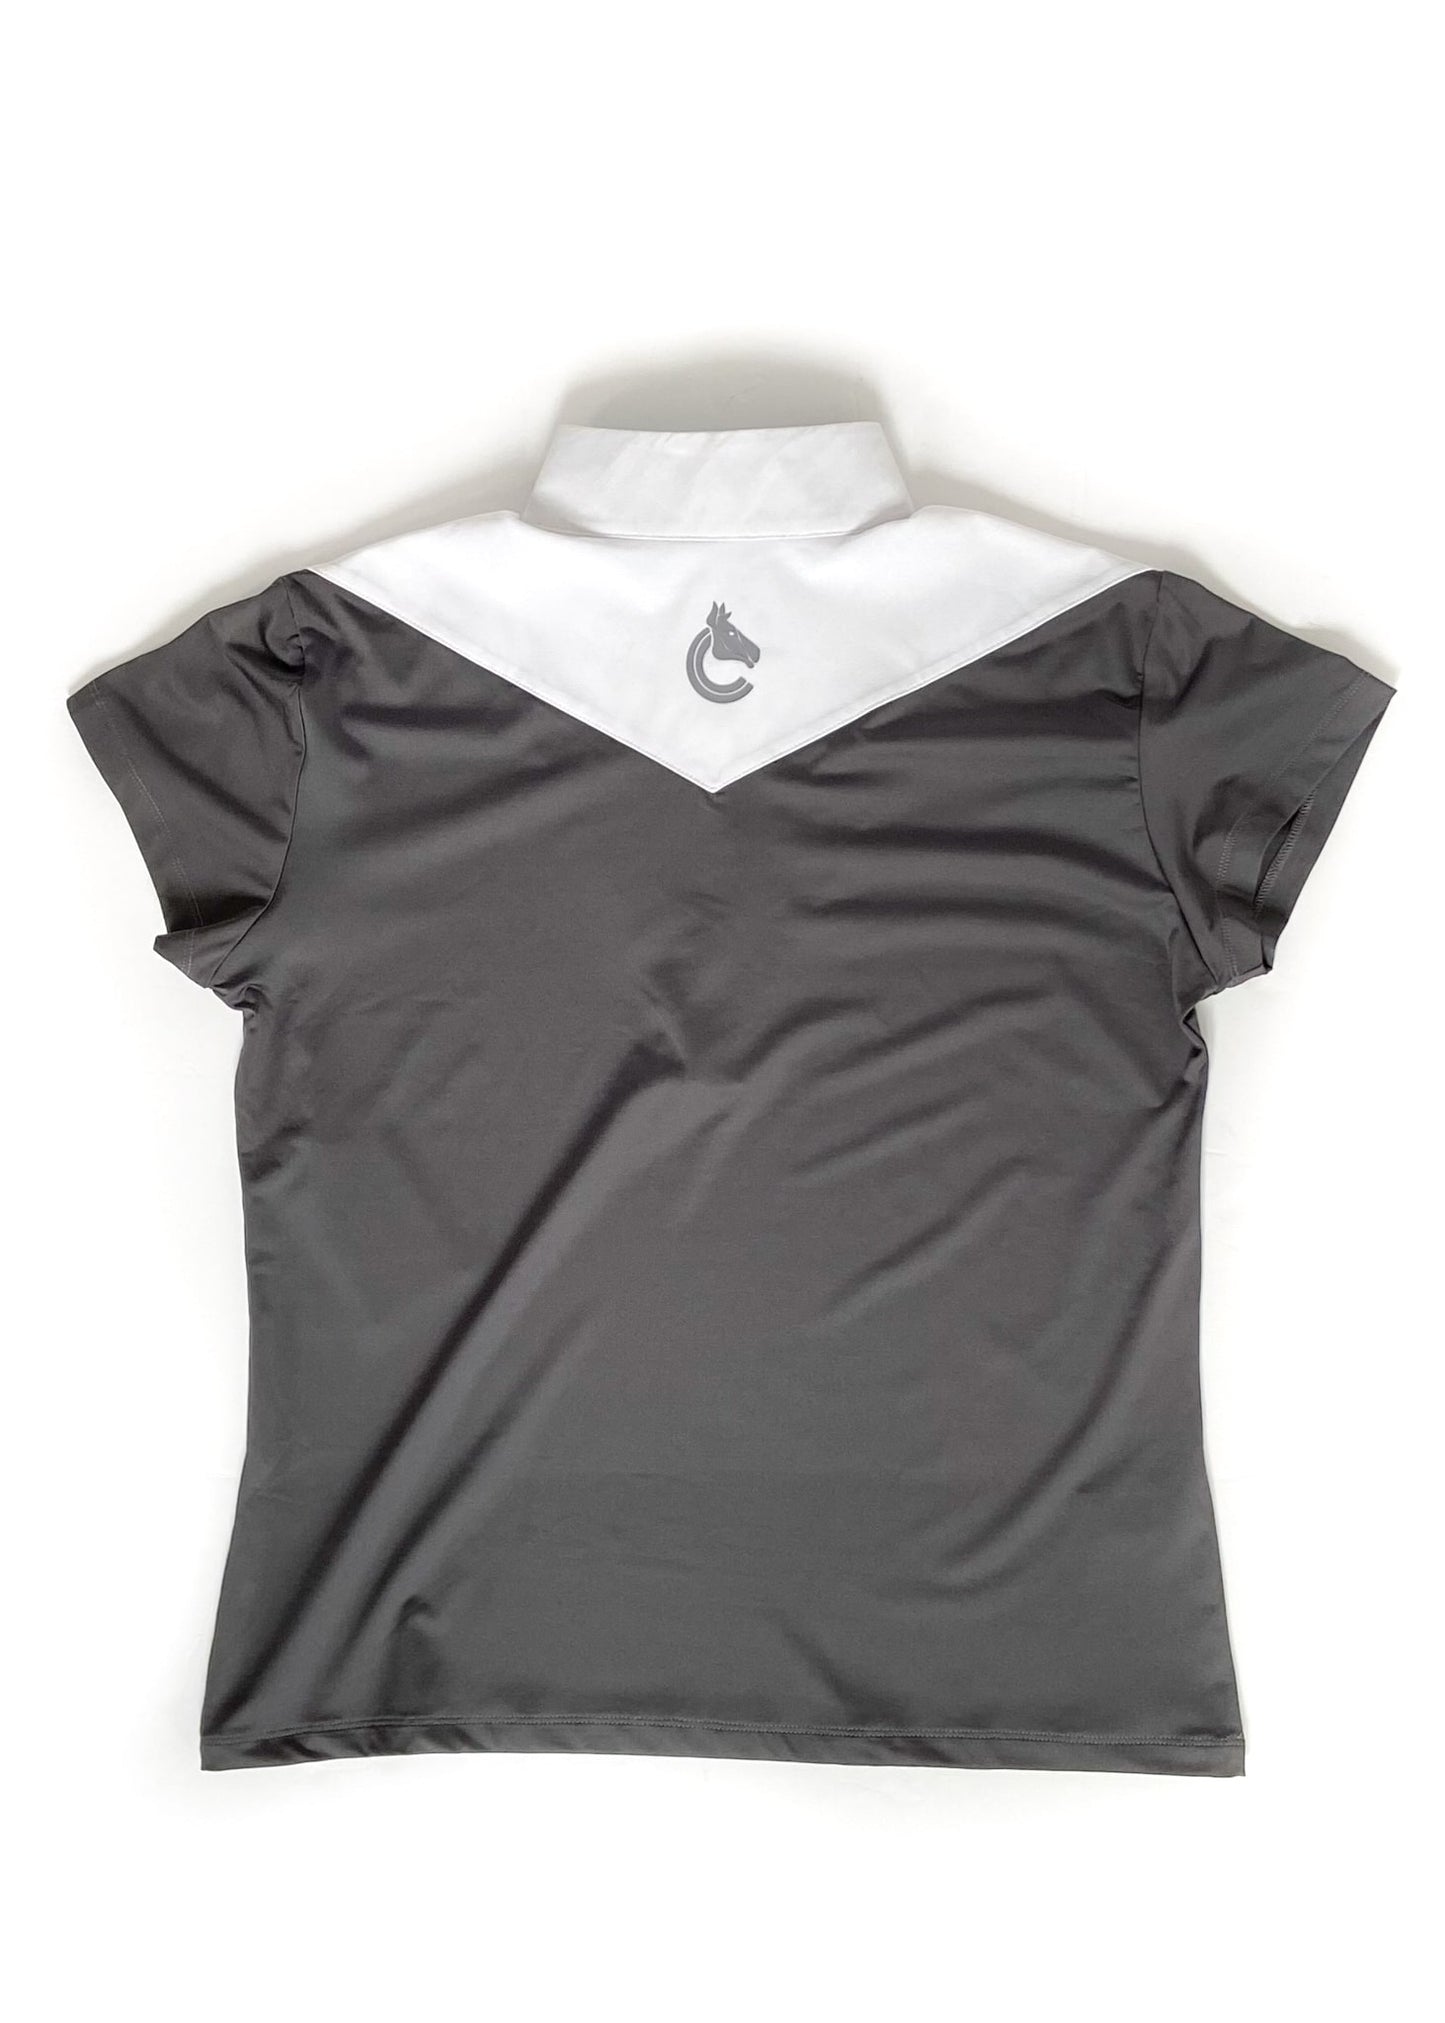 Criniere Margot Show Shirt - Grey - XL